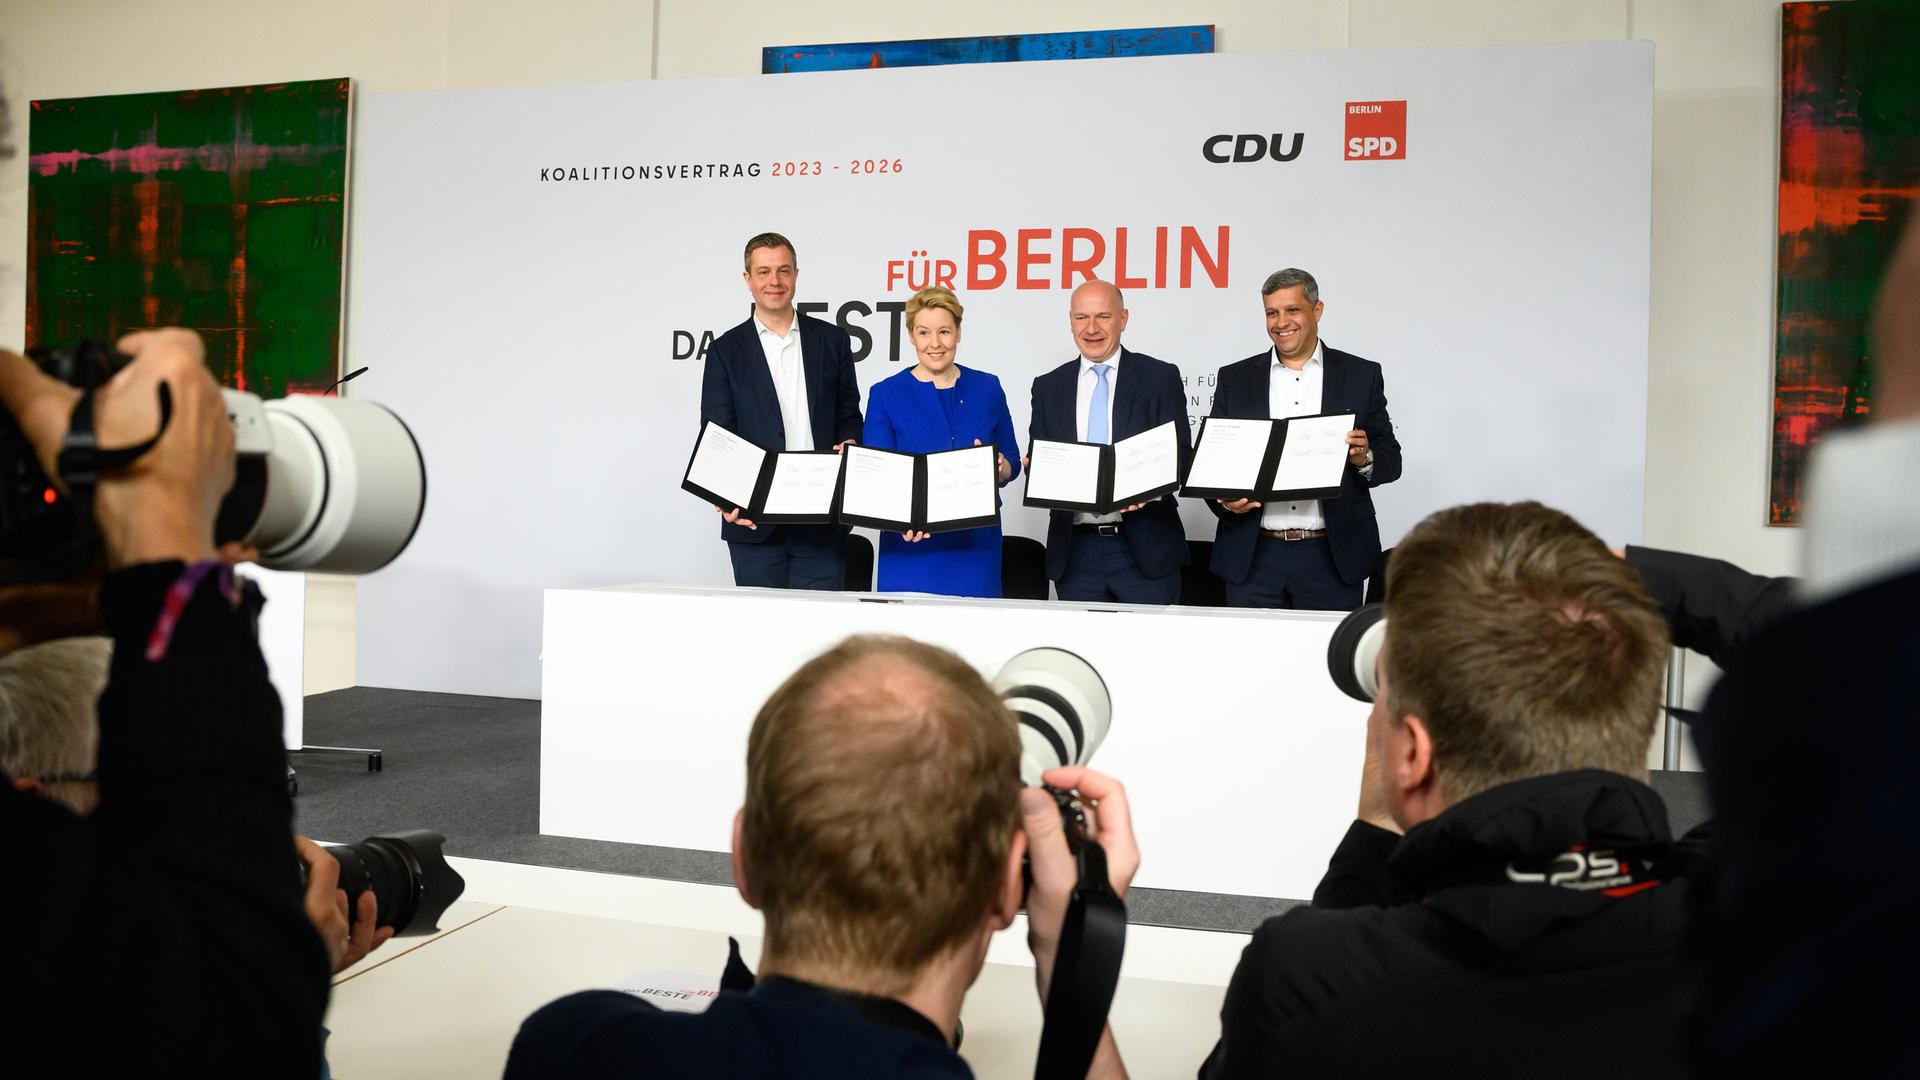 Franziska Giffey (2.v.l., SPD), , Kai Wegner (2.v.r., CDU), Raed Saleh (r, SPD) und Stefan Evers (l, CDU) halten jeweils einen Koalitionsvertrag in die Kameras vieler Fotografen 